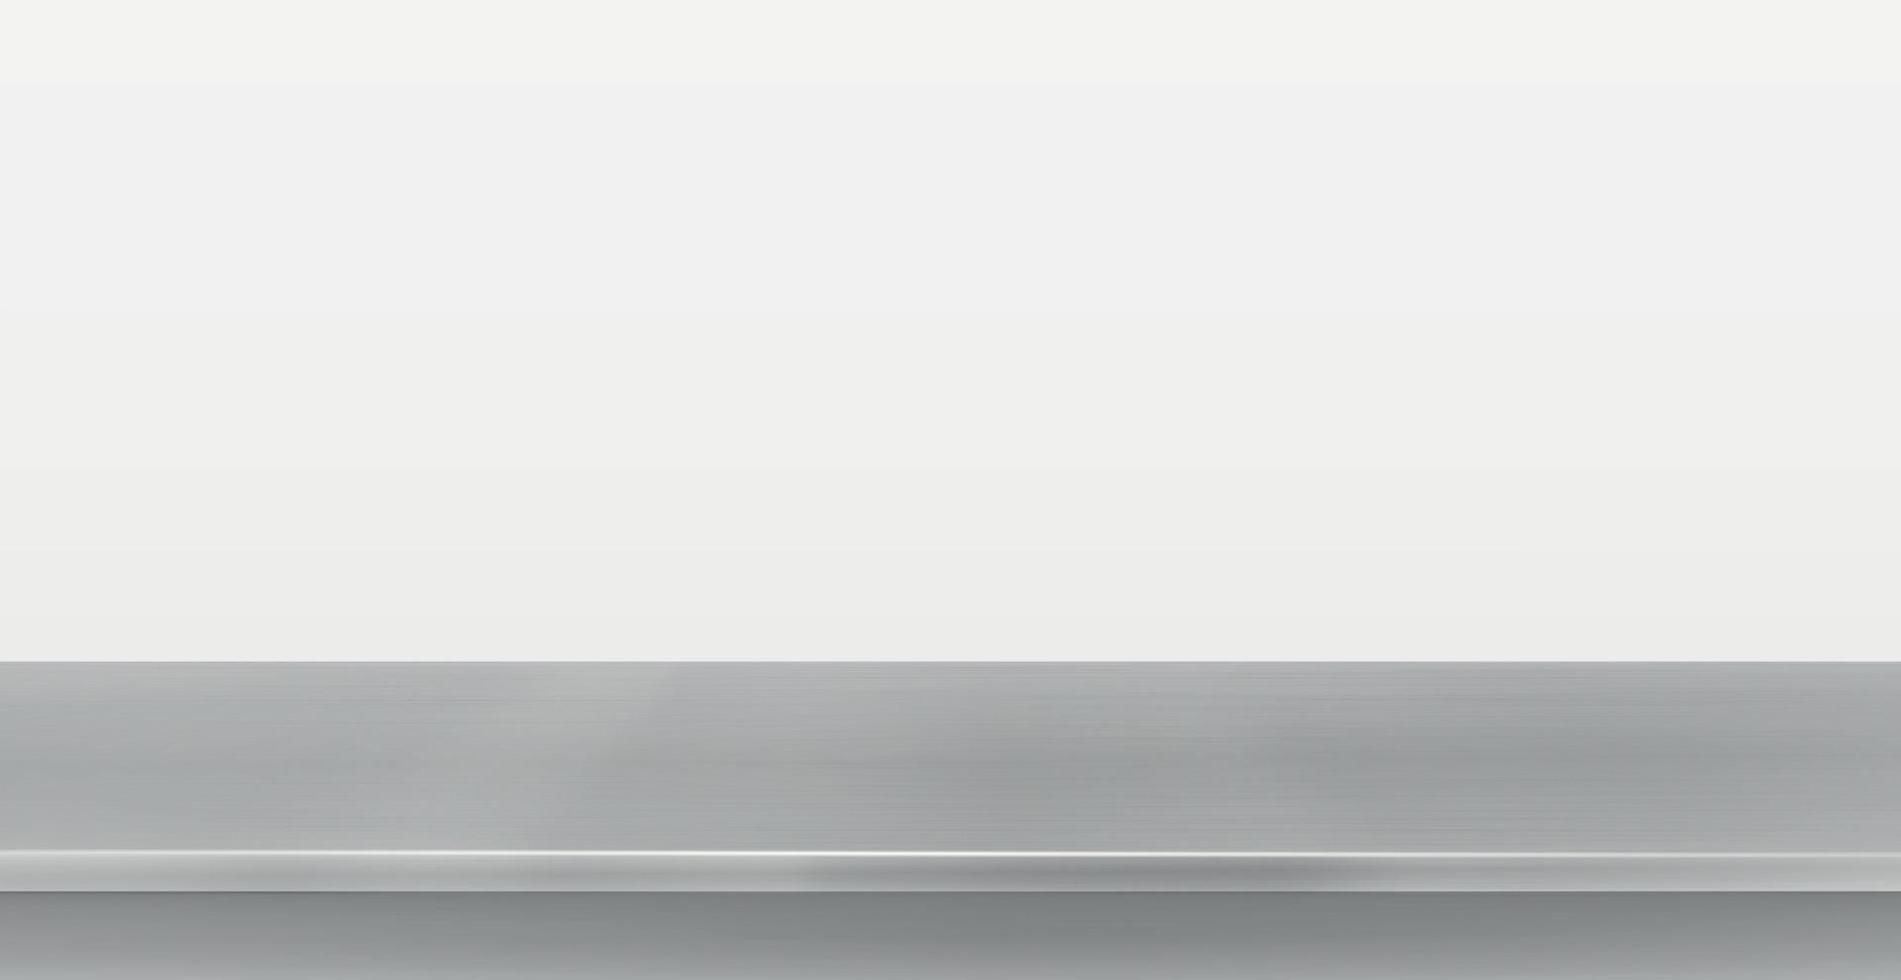 metalen keuken aanrecht, ijzer textuur, grote tafel op een witte achtergrond - vector